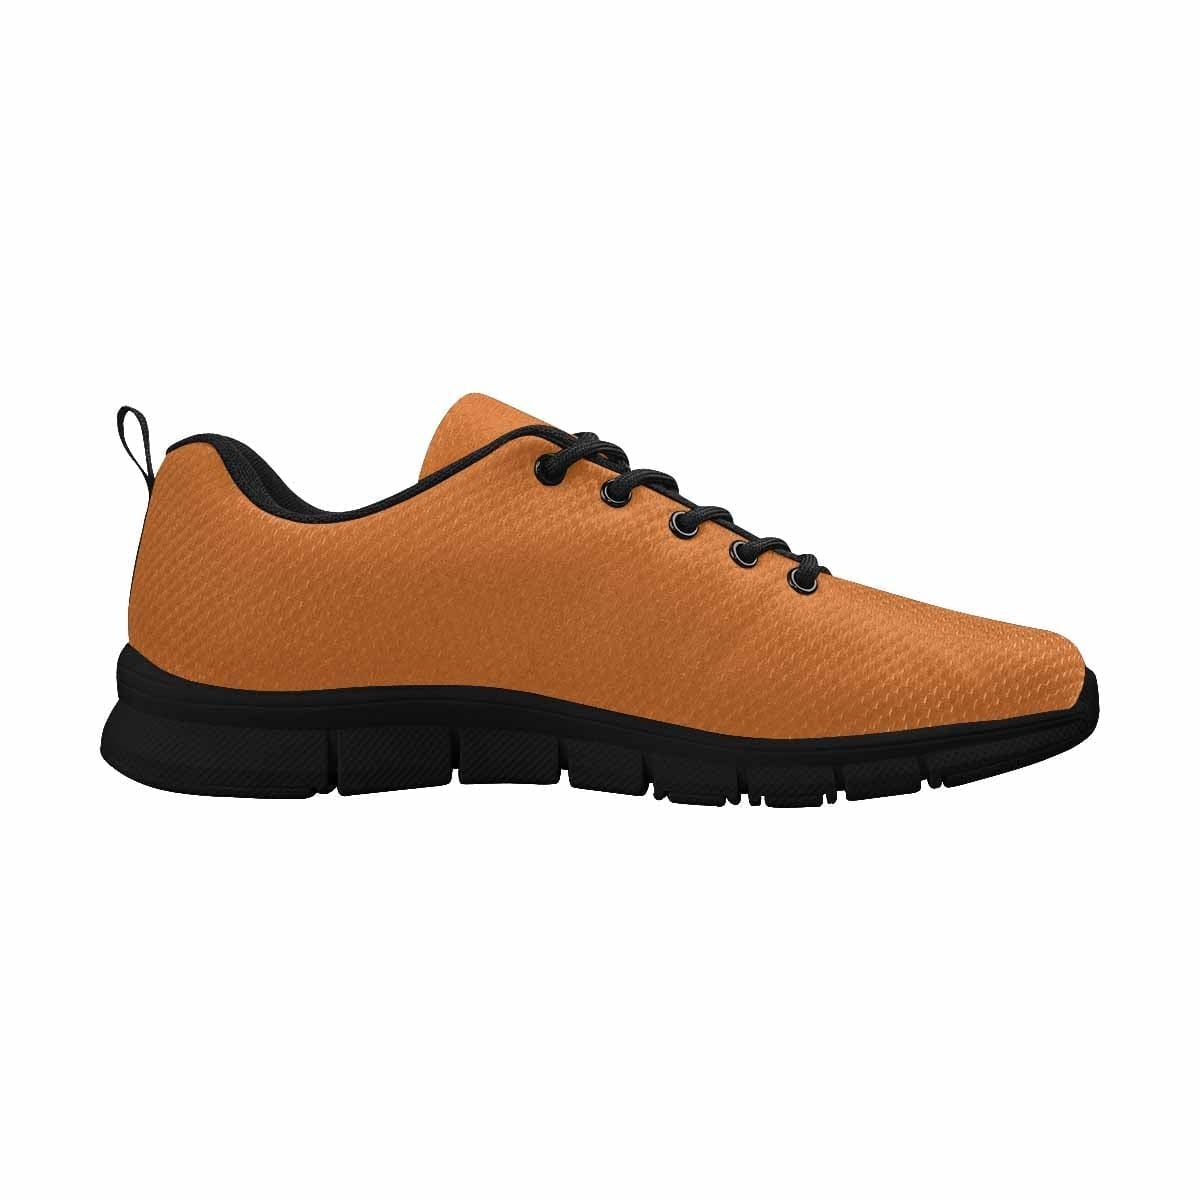 Sneakers For Women Cinnamon Brown - Womens | Sneakers | Running